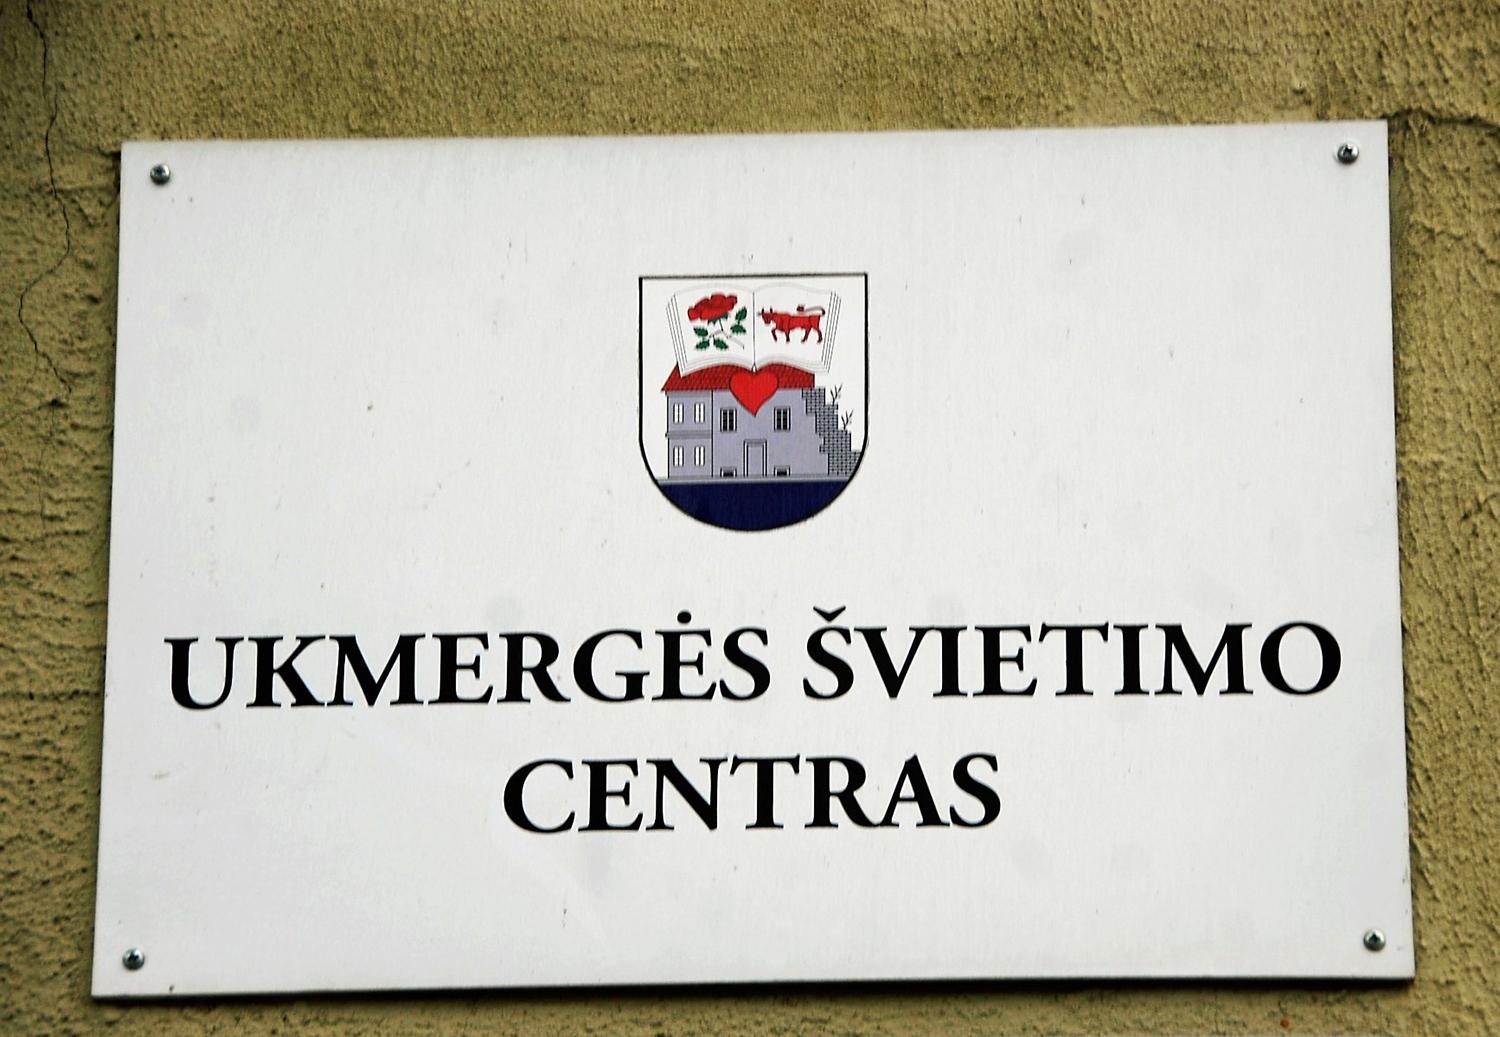 Steigiama nauja tarnyba / Ukmergės švietimo centras. Gedimino Nemunaičio nuotr.